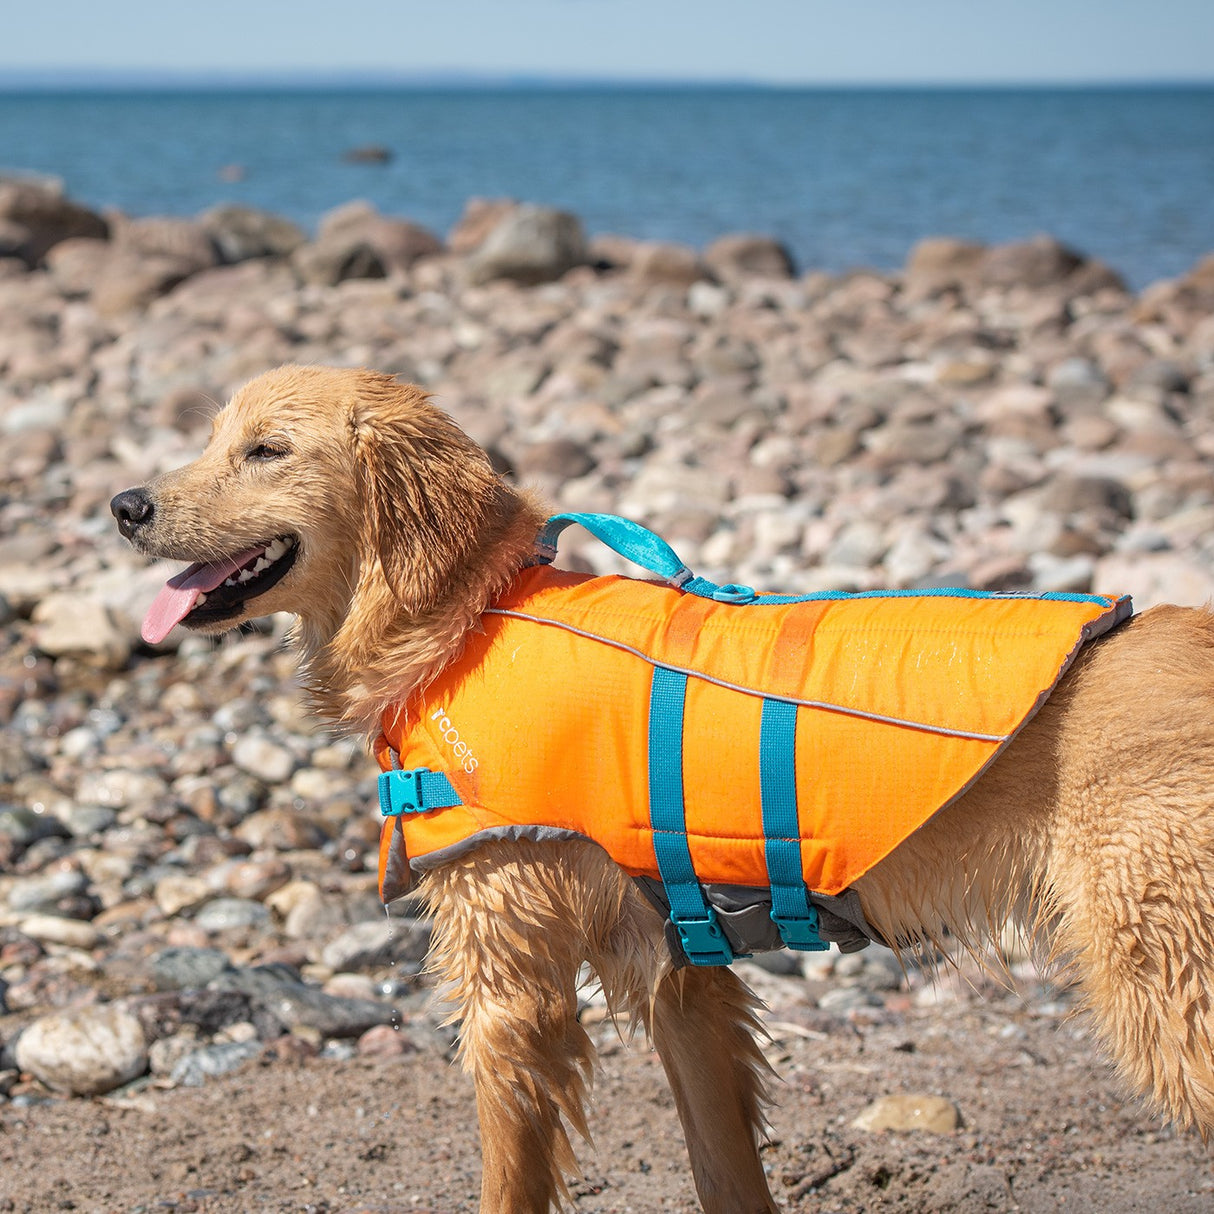 Gilet de sécurité à l\'eau et de sauvetage pour chien en mer